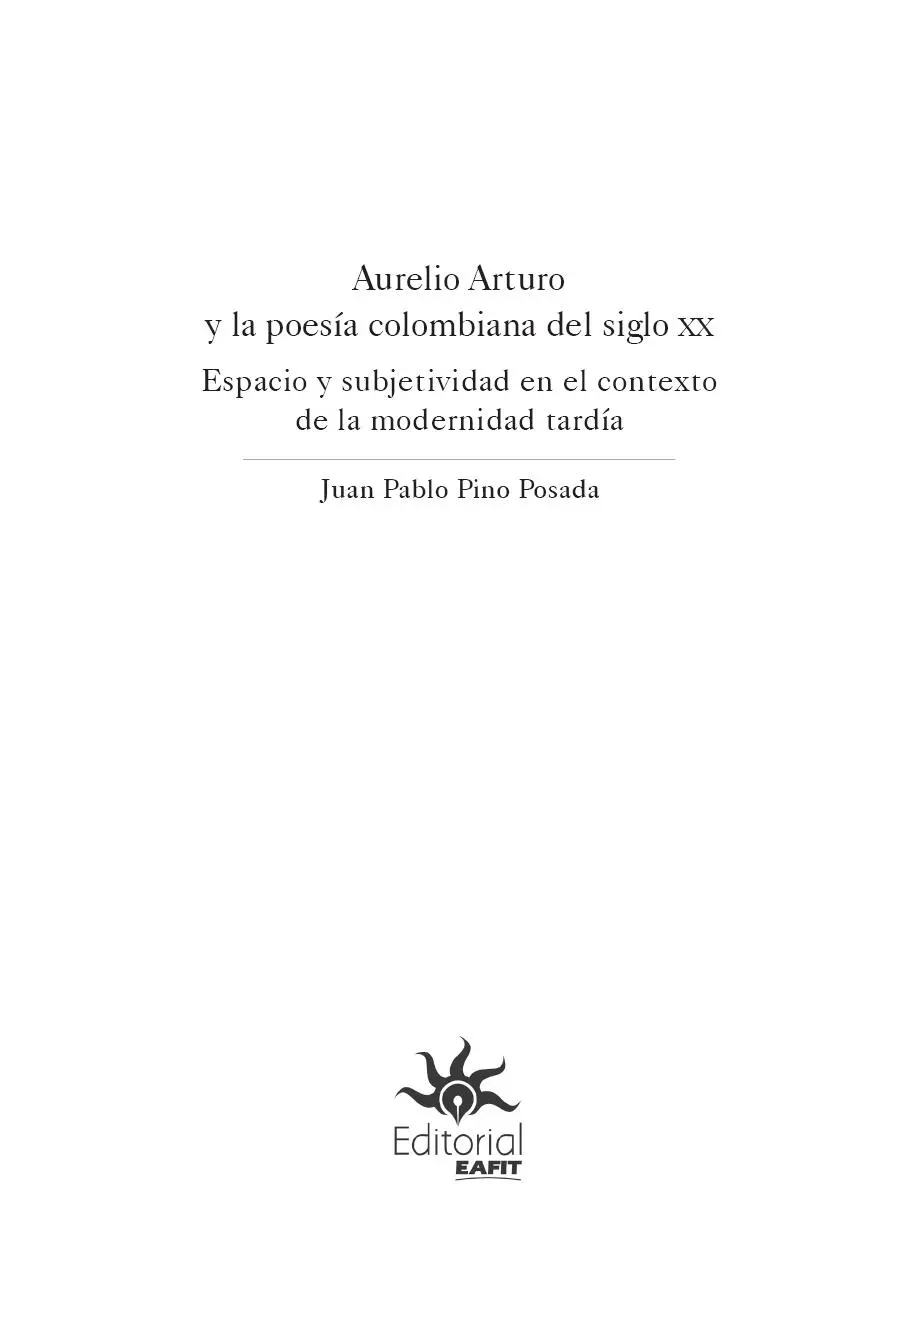 Pino Posada Juan Pablo Aurelio Arturo y la poesía colombiana del siglo XX - фото 3